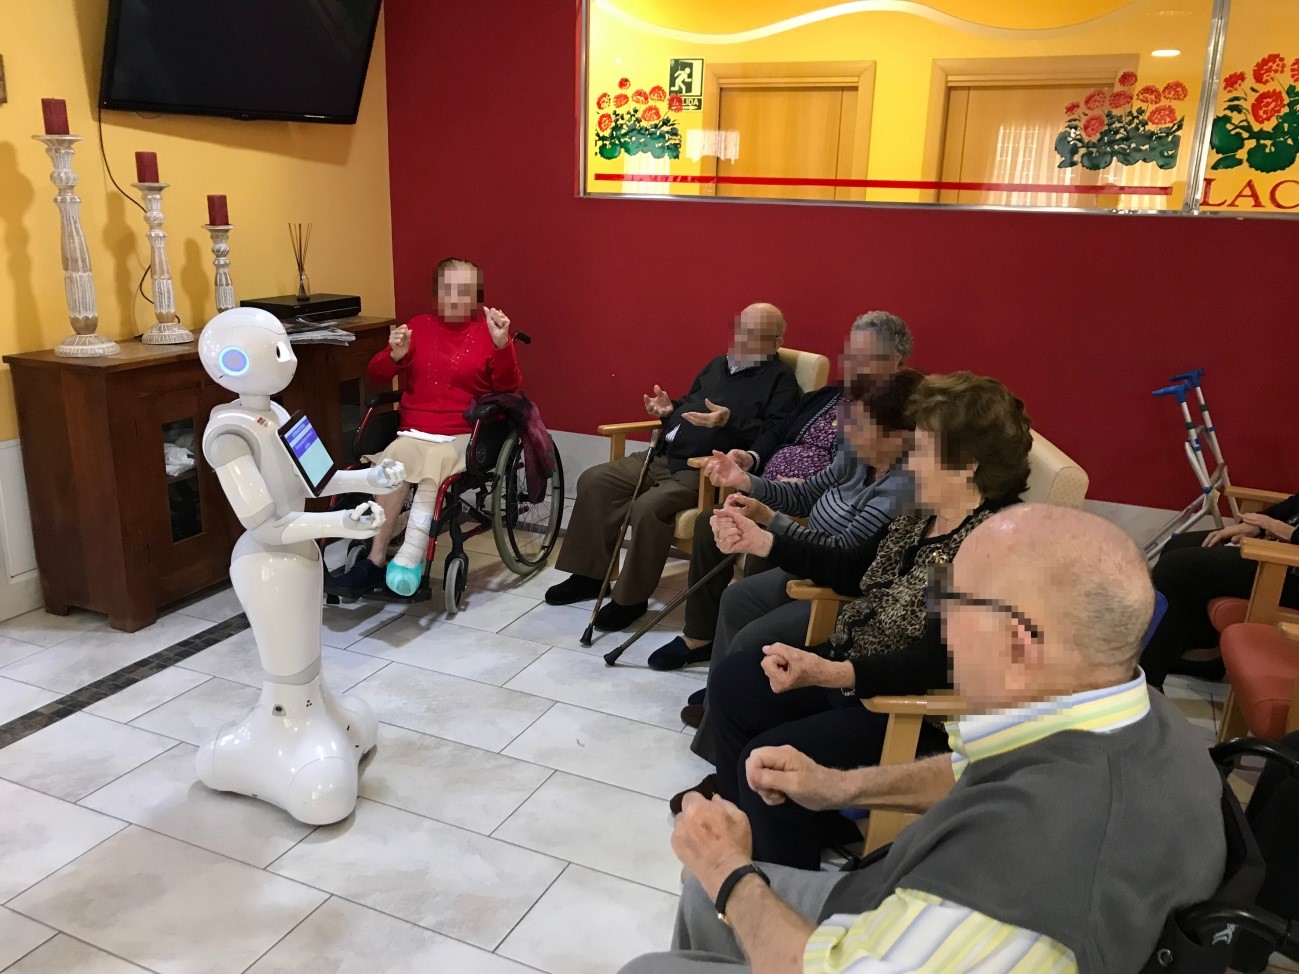 Una Nueva Oportunidad de atención a las personas MAyores mediante robótica Social en las residencias Lacort (proyecto “UNO MAS”)